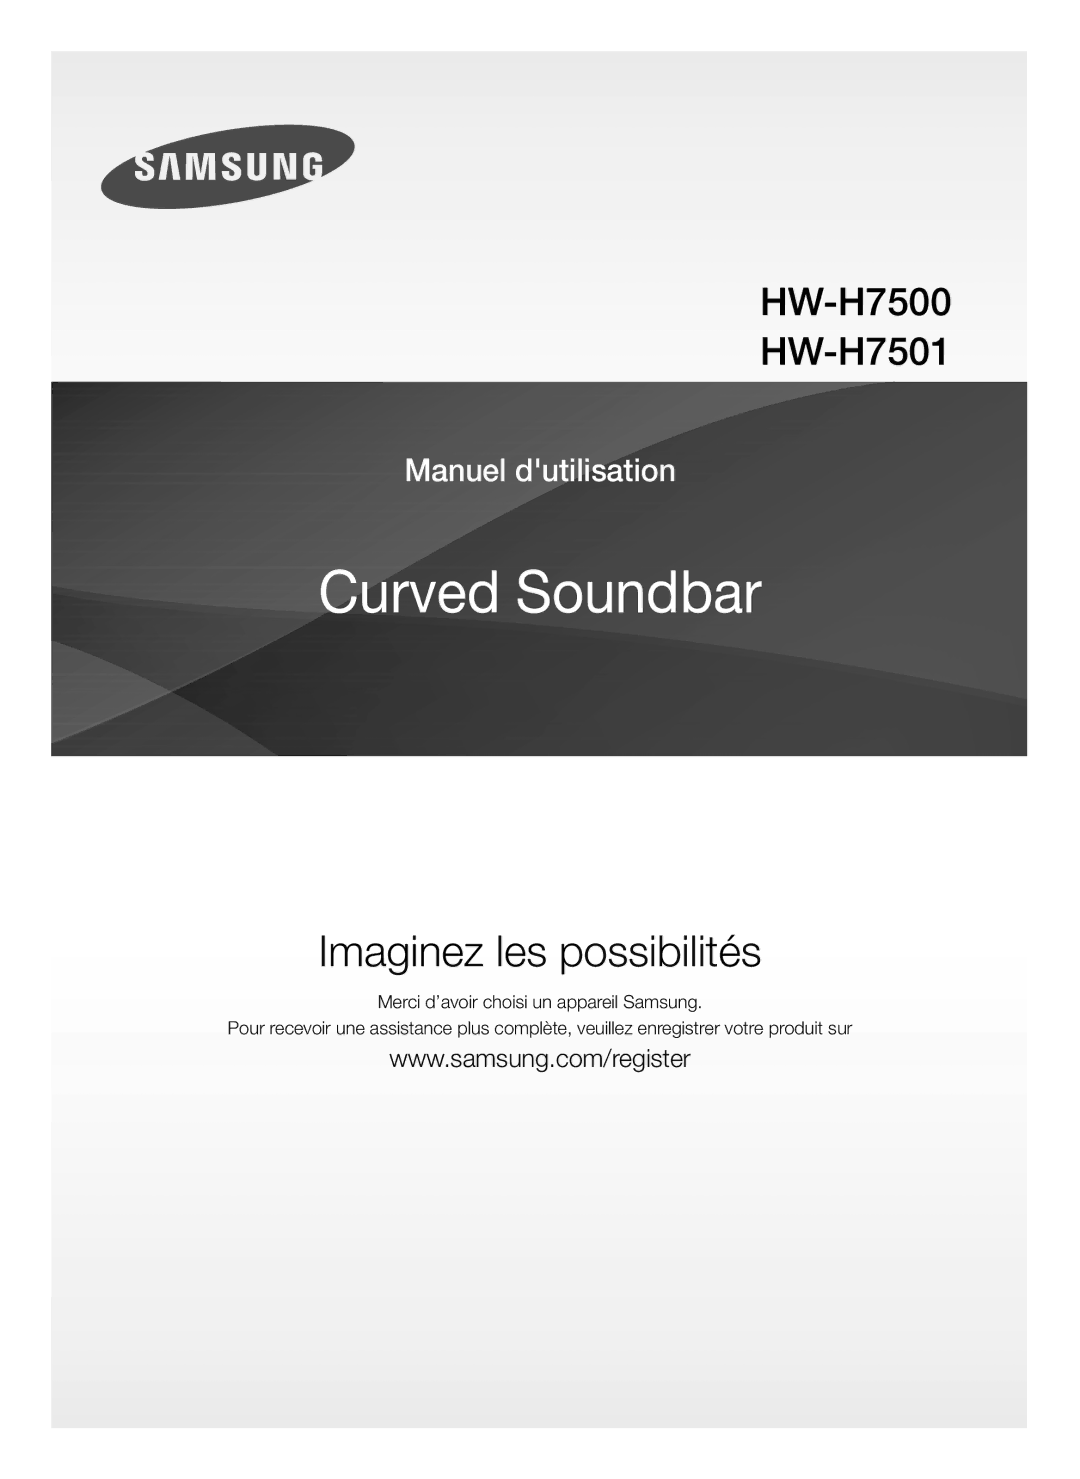 Samsung HW-H7500/ZF, HW-H7501/ZF manual Curved Soundbar 